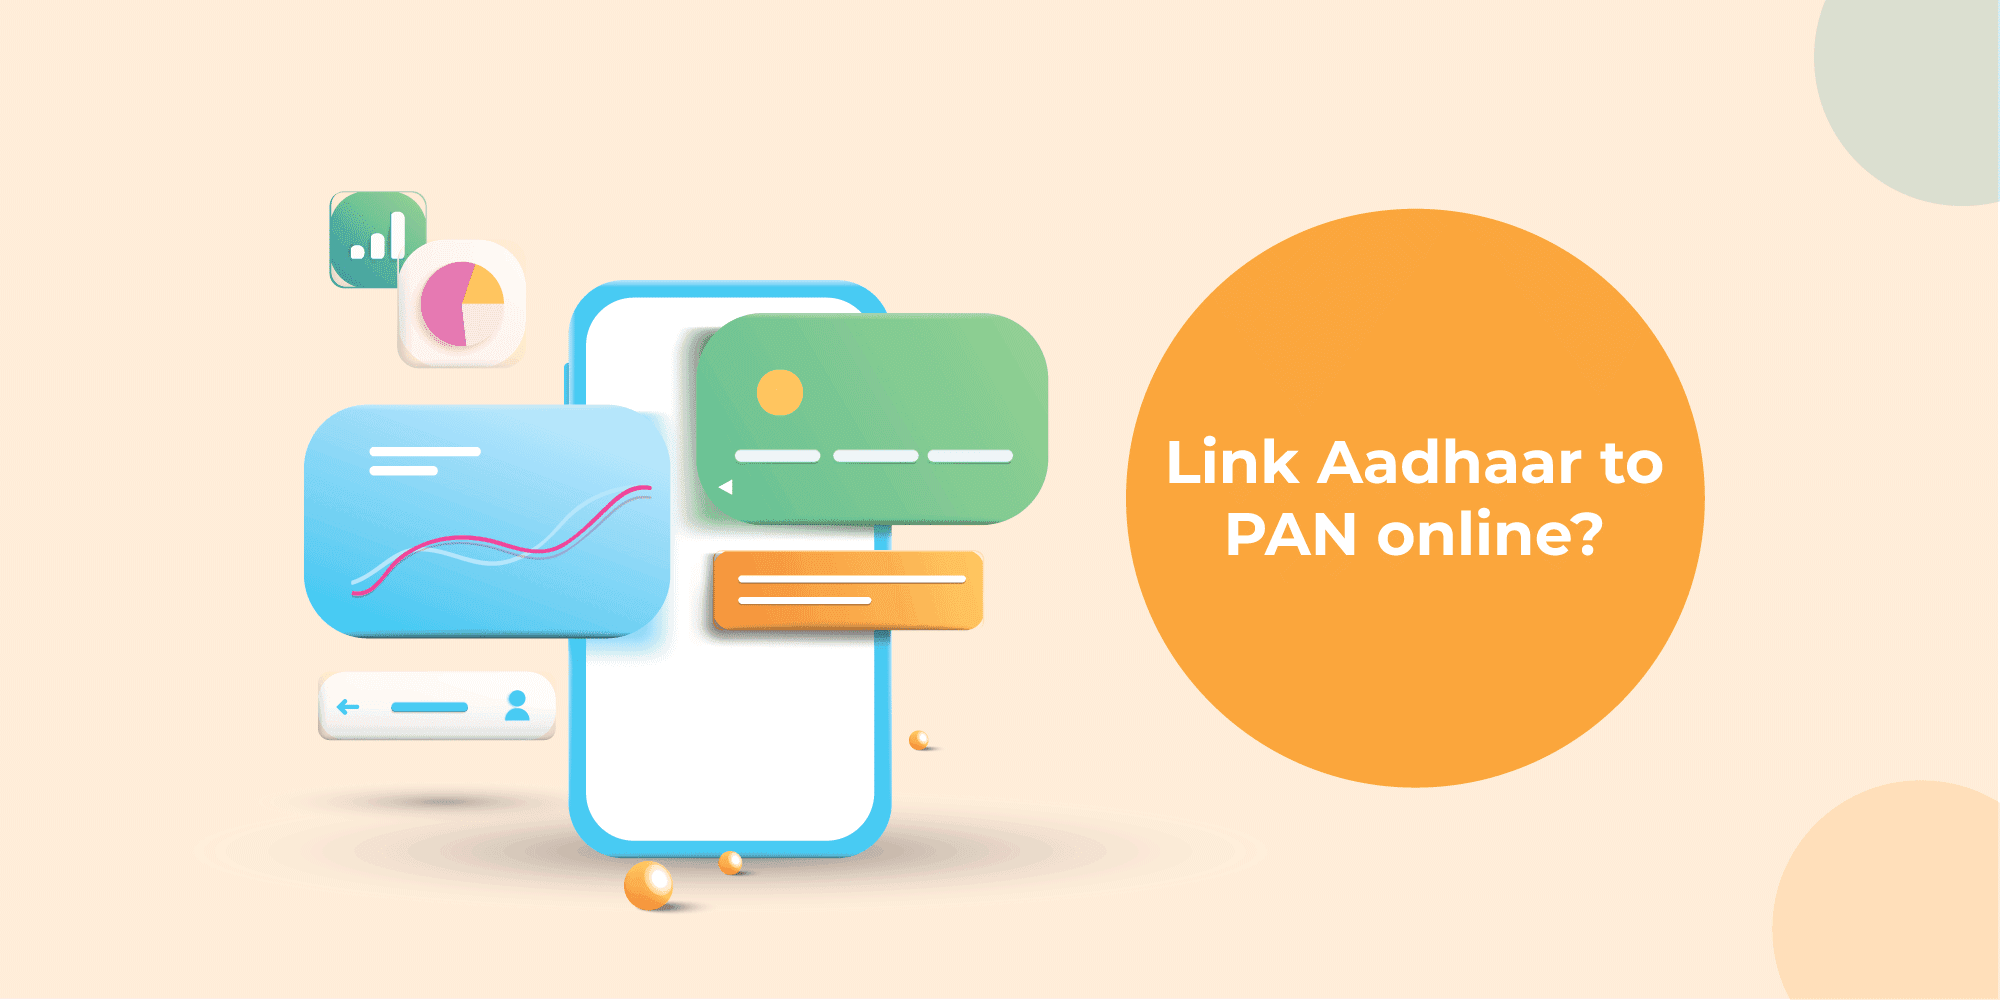 Steps for Aadhaar Card Link to PAN Card: Online & Offline